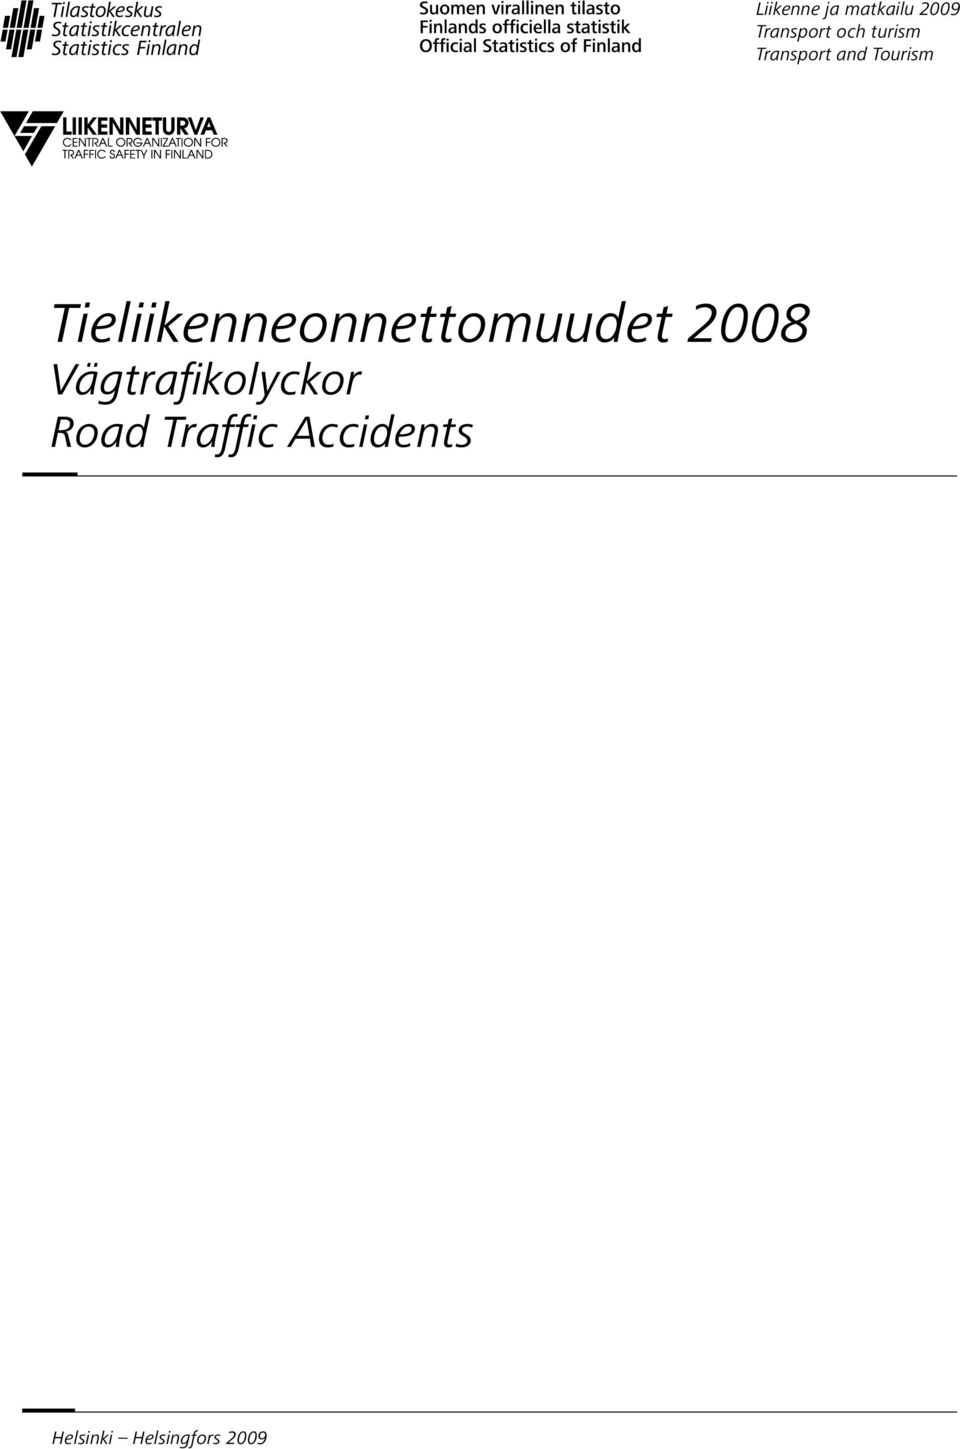 Tieliikenneonnettomuudet 2008